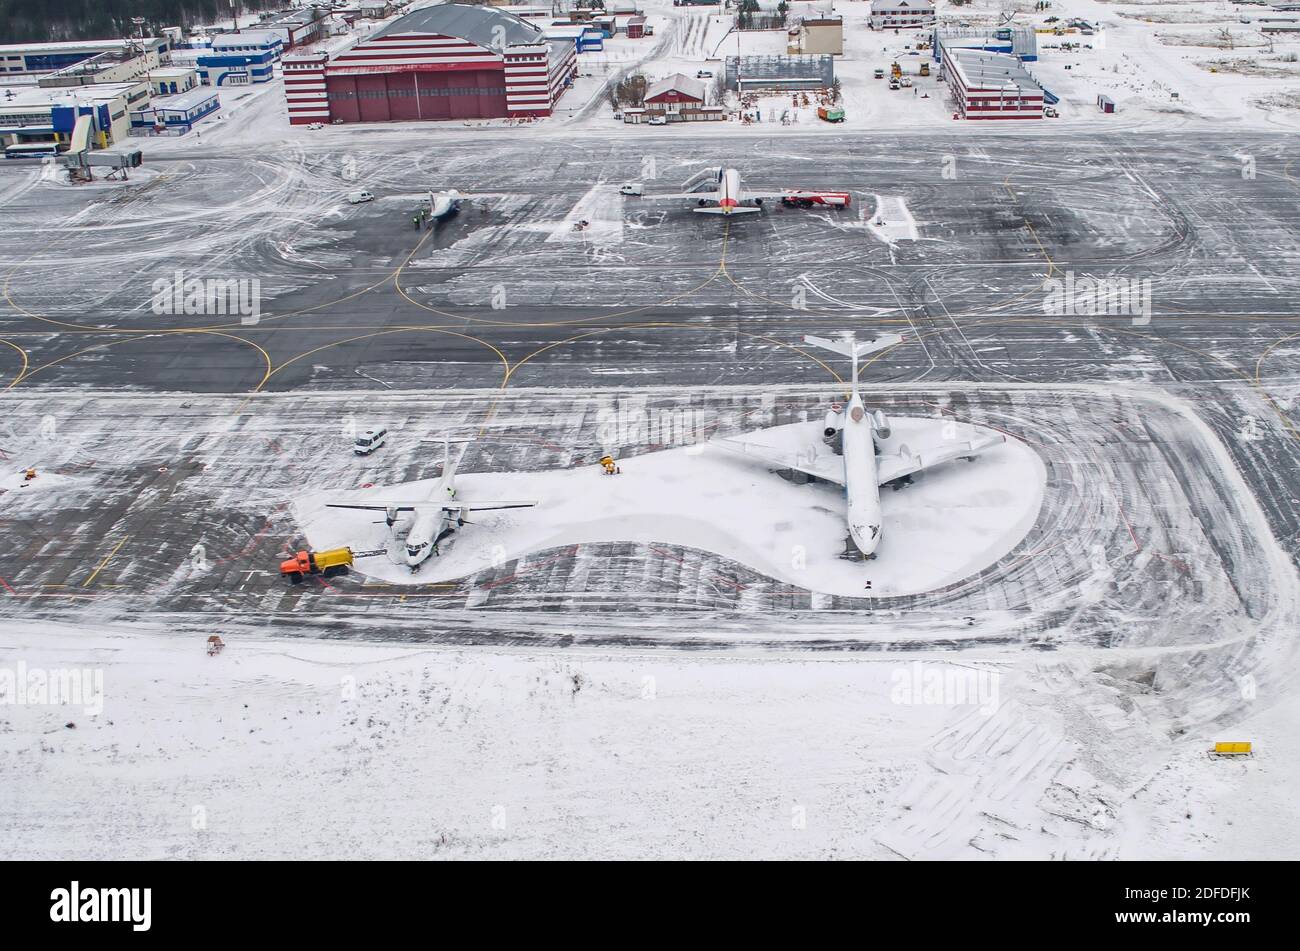 Parcheggio per l'aeroporto e la pista invernale, vista da un'altezza a un paesaggio innevato Foto Stock